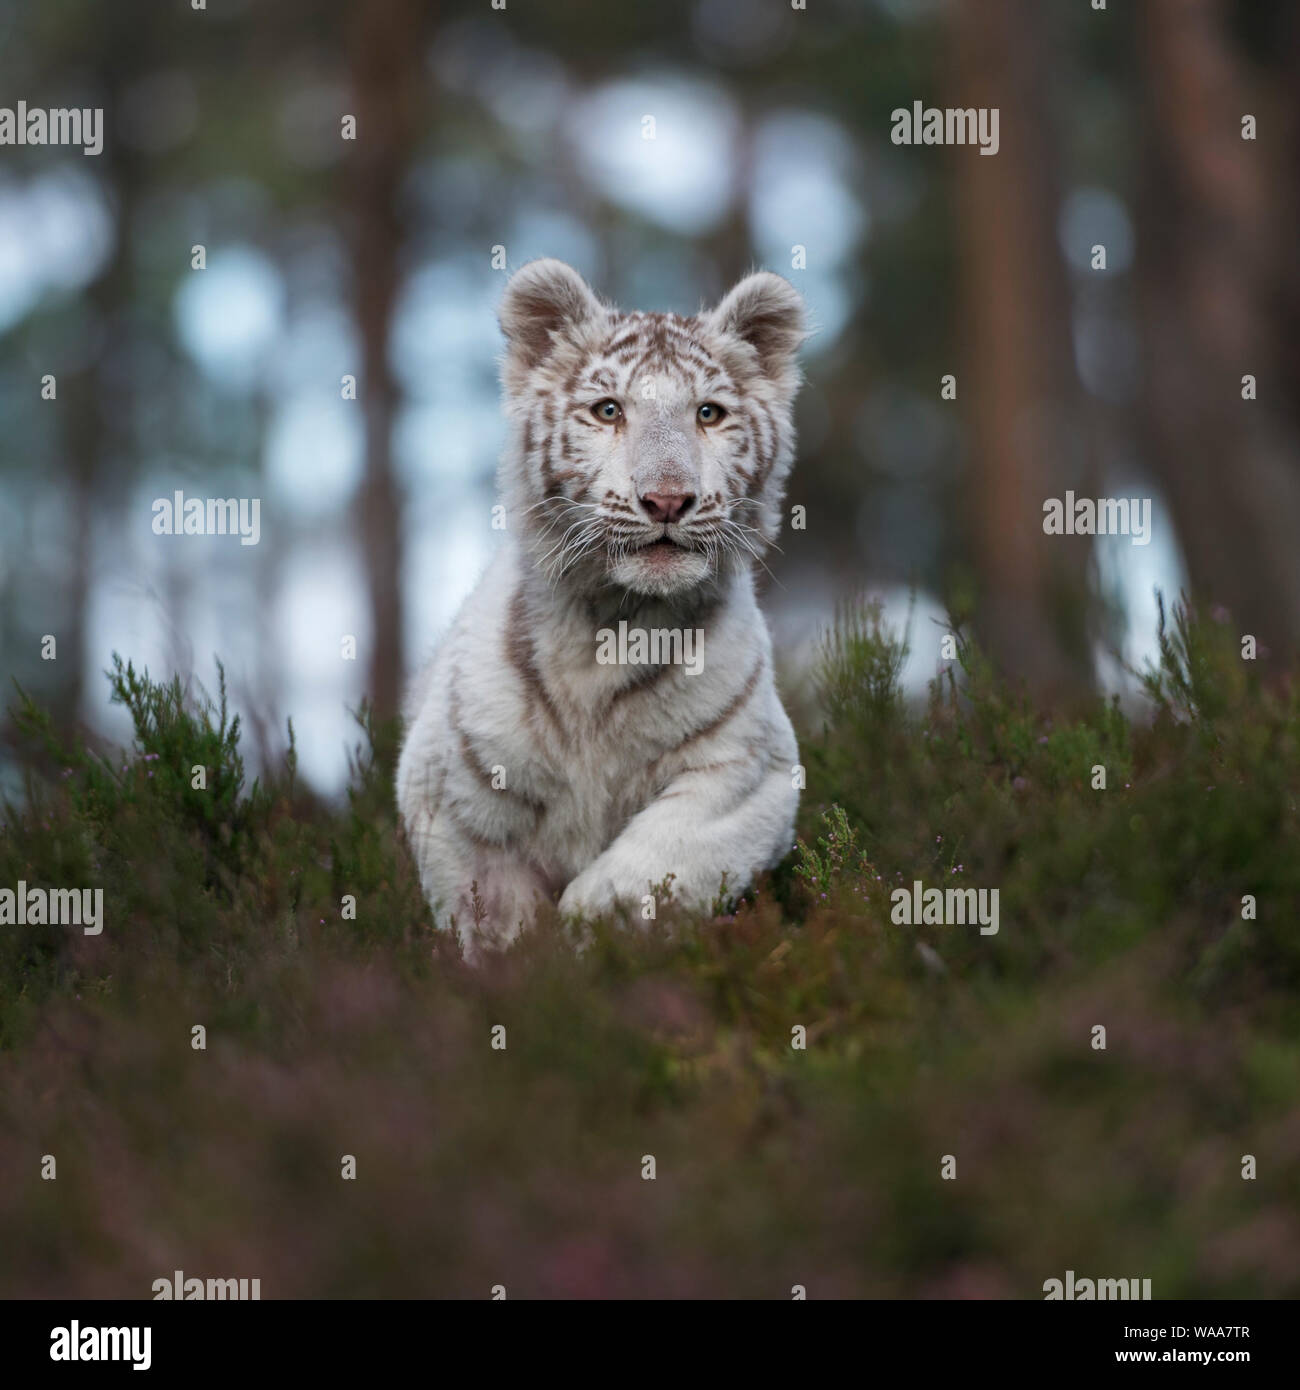 Royal Bengal Tiger/Koenigstiger (Panthera tigris), weißes Tier, schnell laufen, springen durch das Unterholz eines natürlichen Wald, frontale Ansicht. Stockfoto